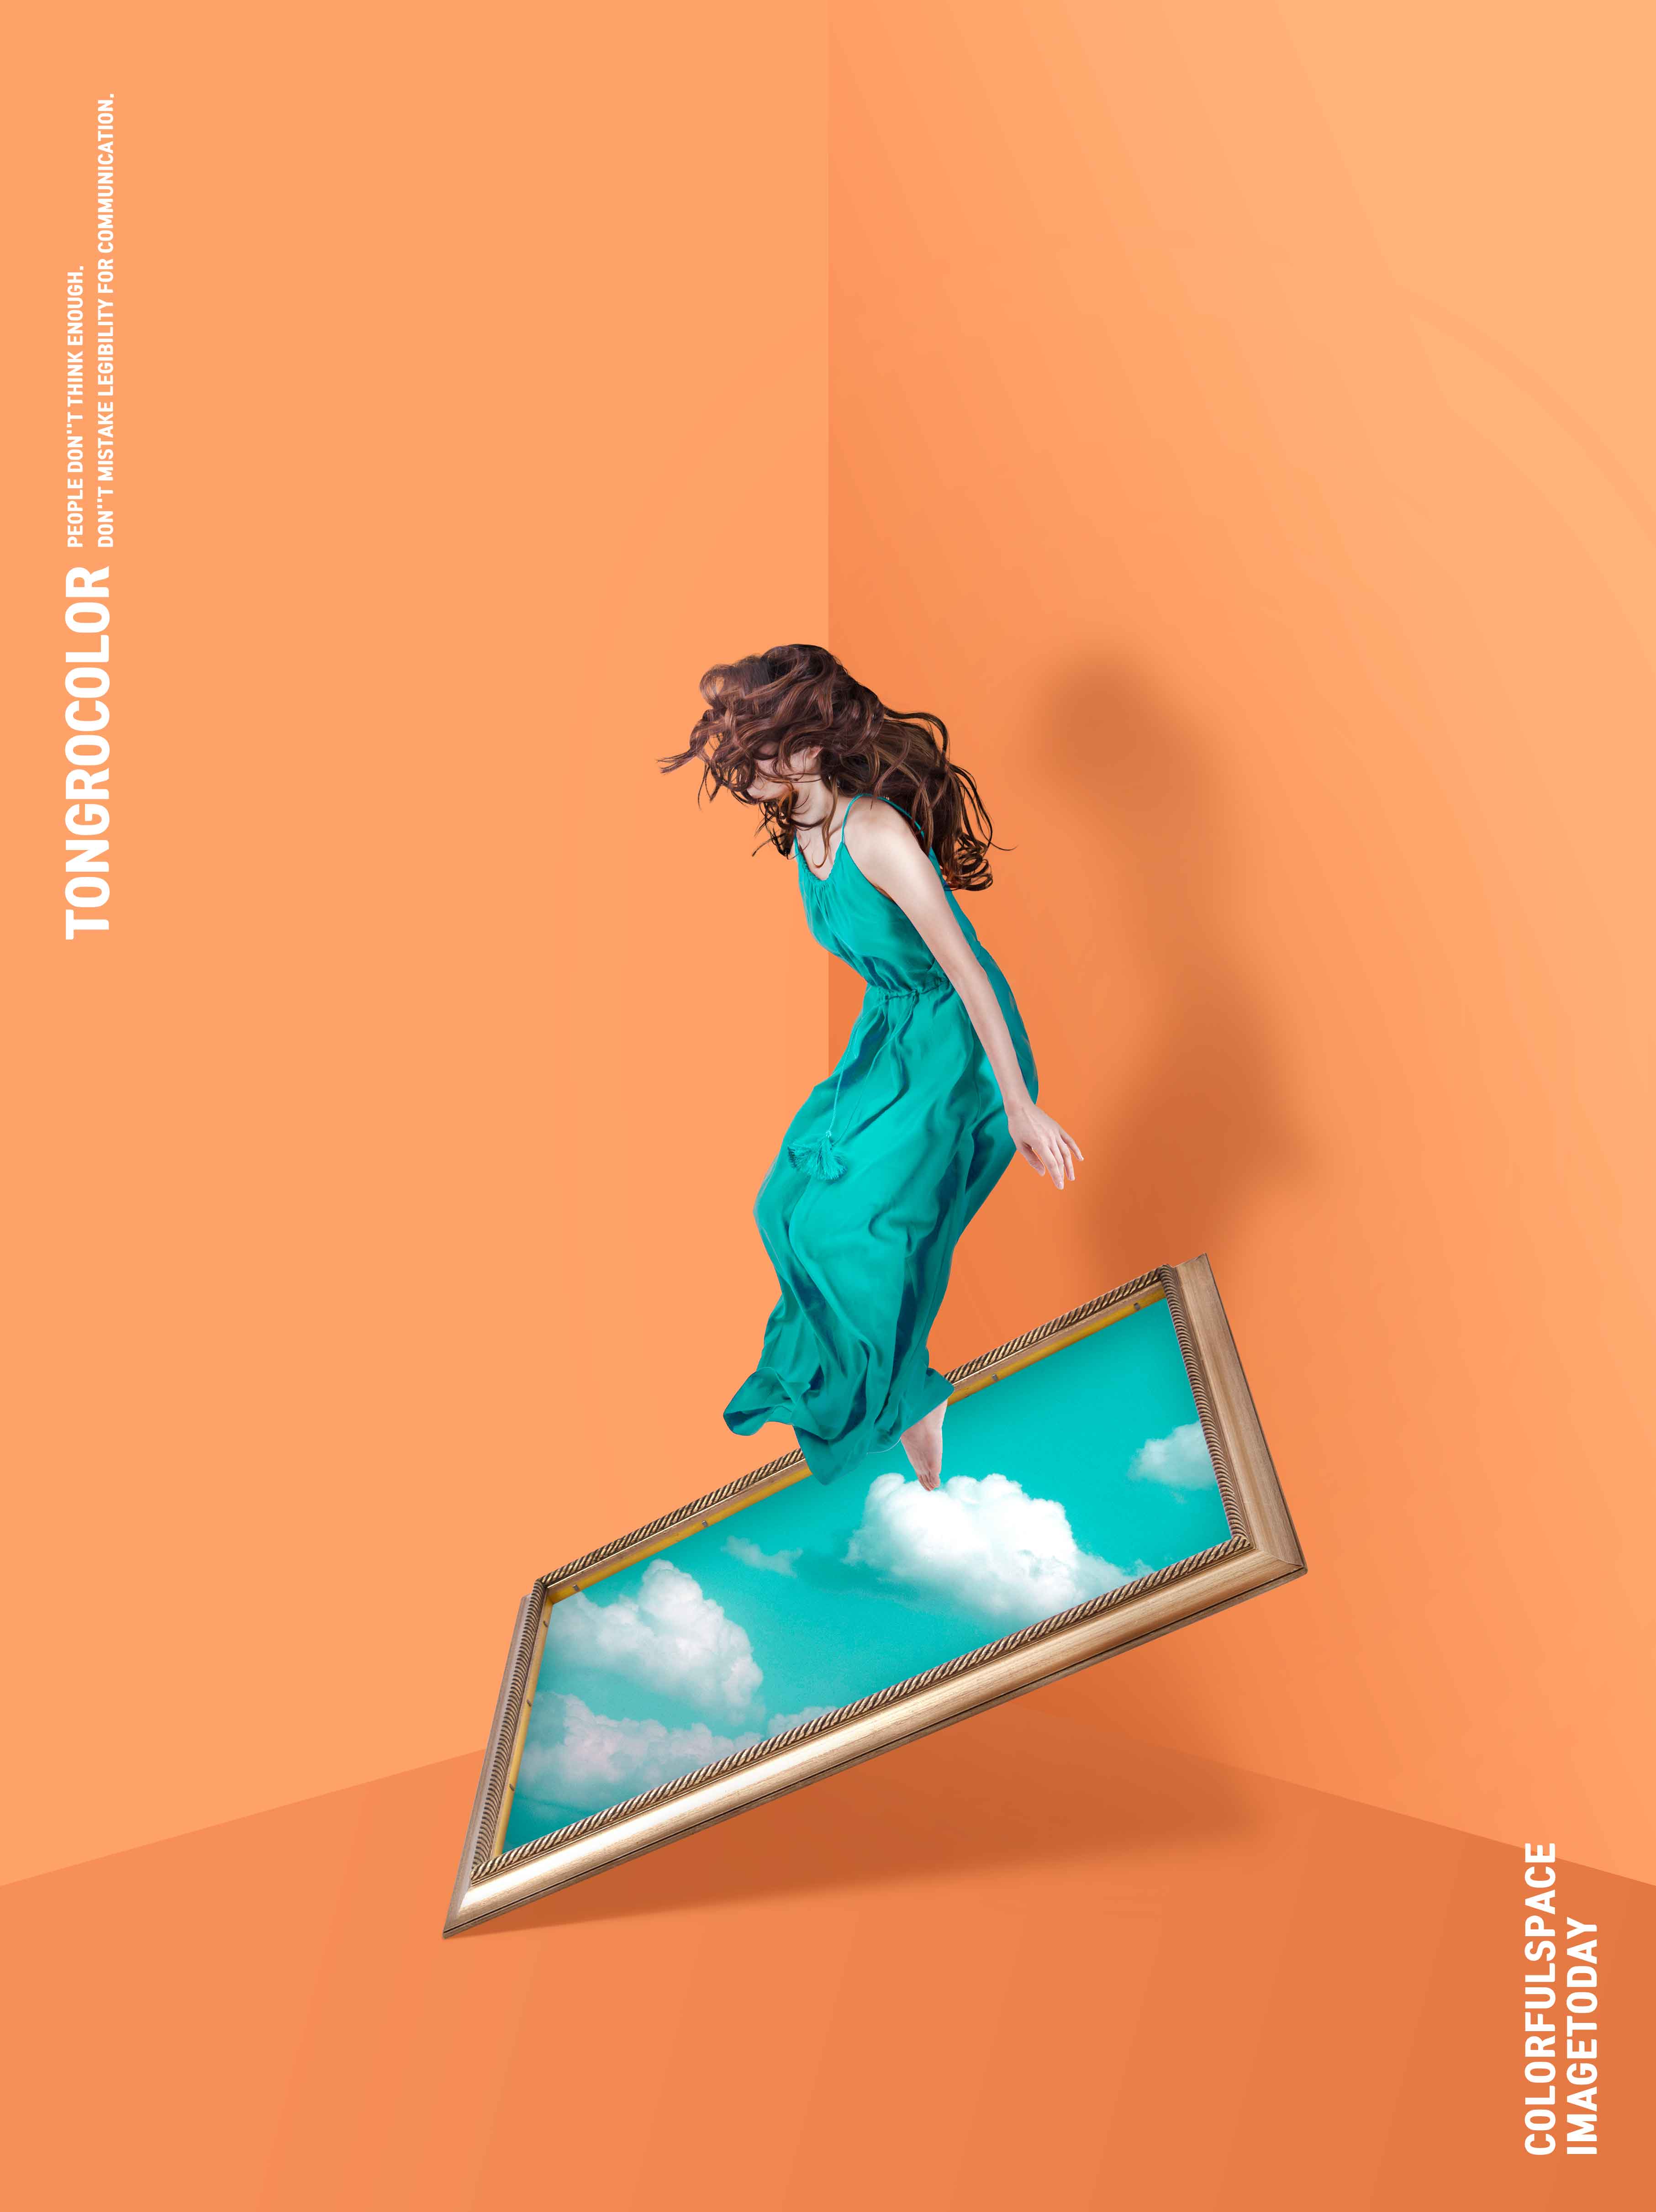 长裙美女&天空作品画抽象空间主题海报PSD素材第一素材精选素材插图